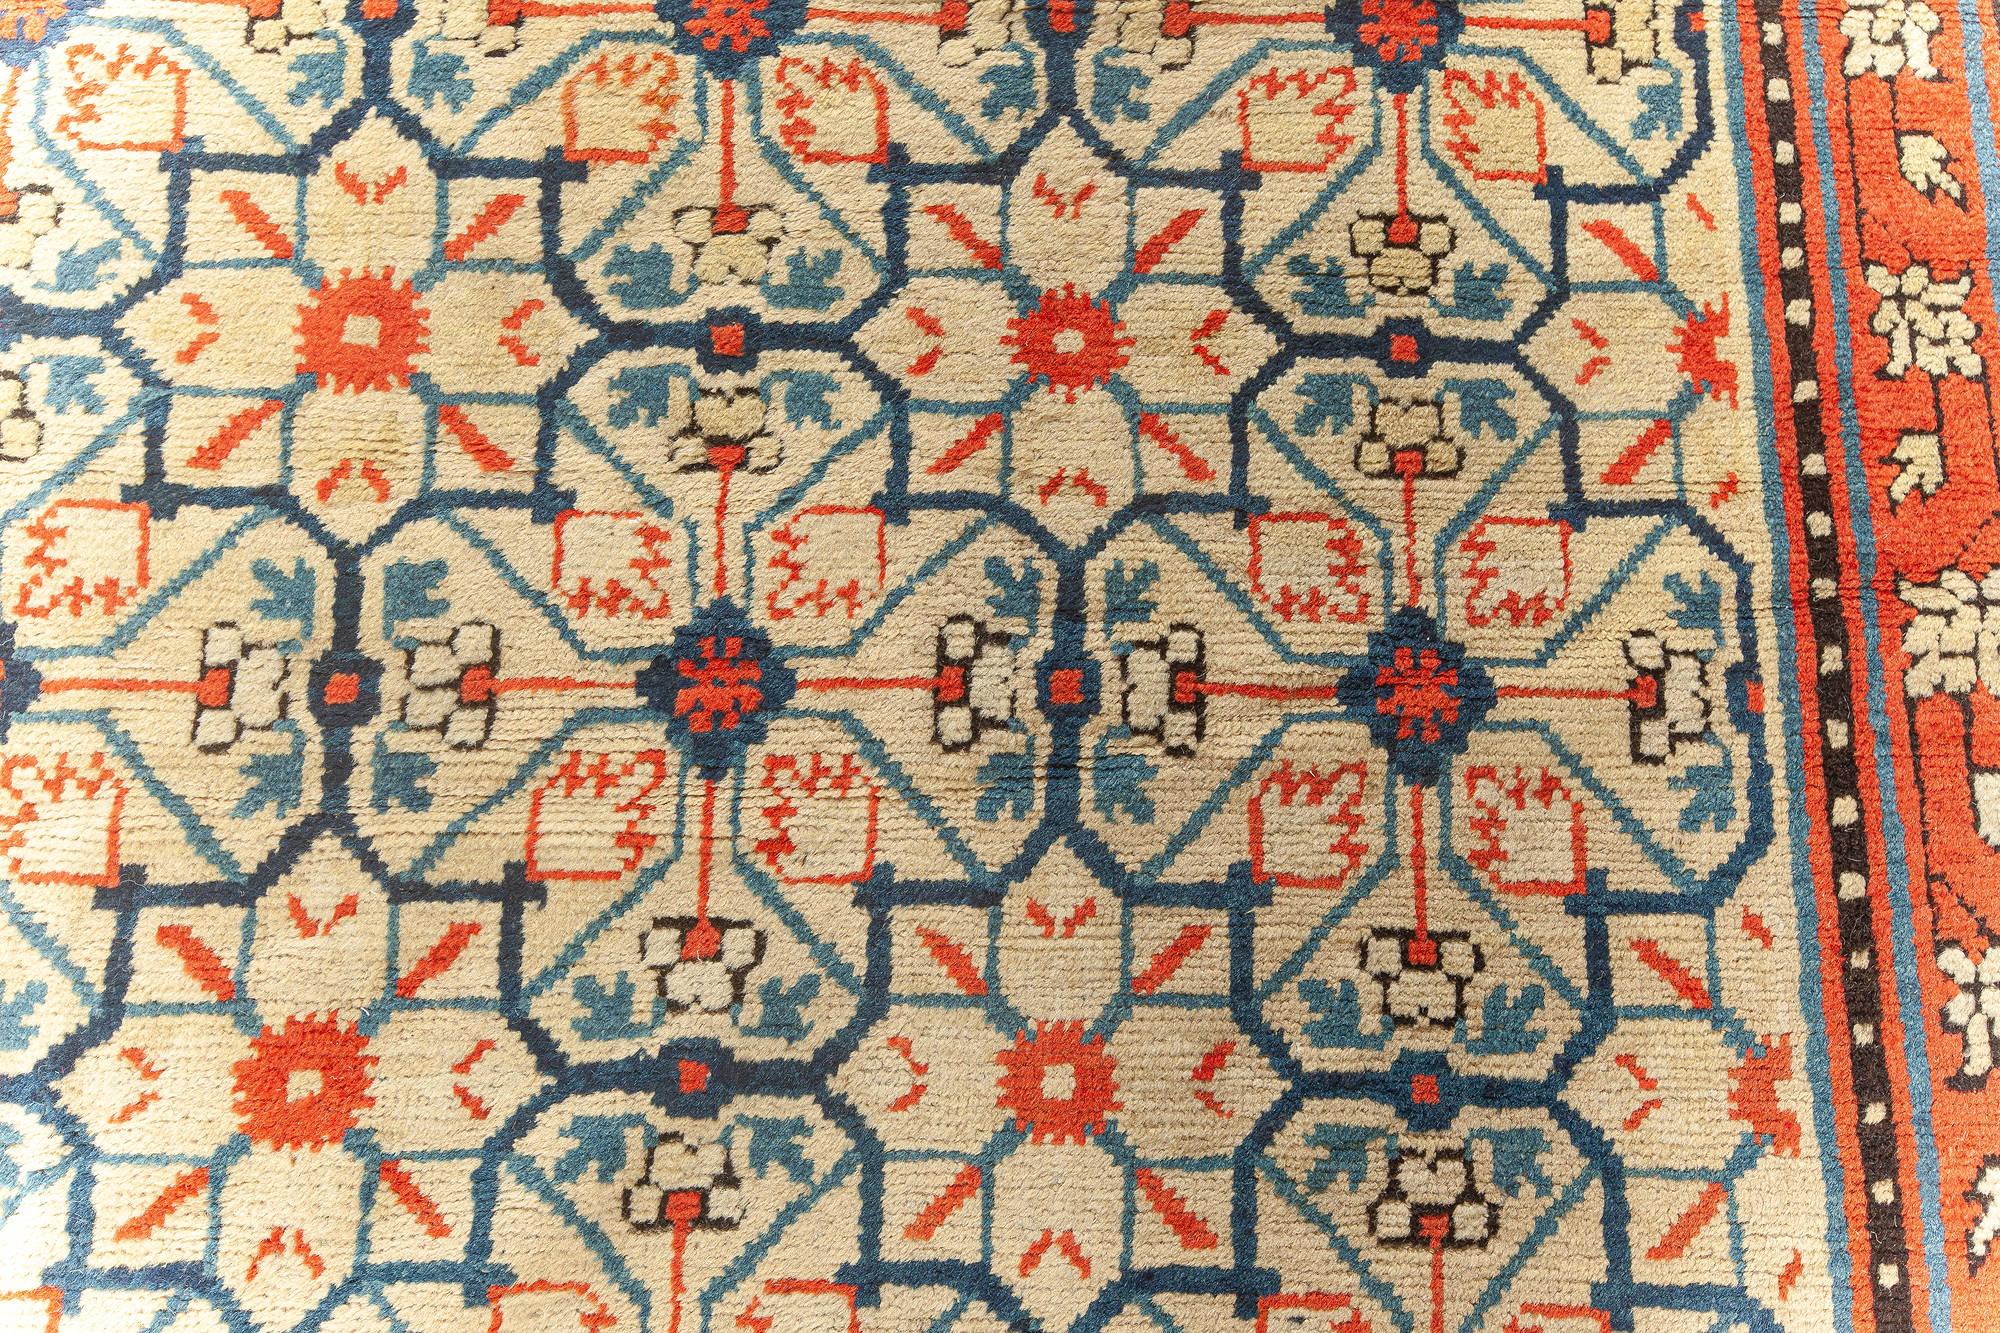 Handgefertigter Samarkand-Khotan-Teppich aus dem frühen 20. Jahrhundert.
Größe: 8'9